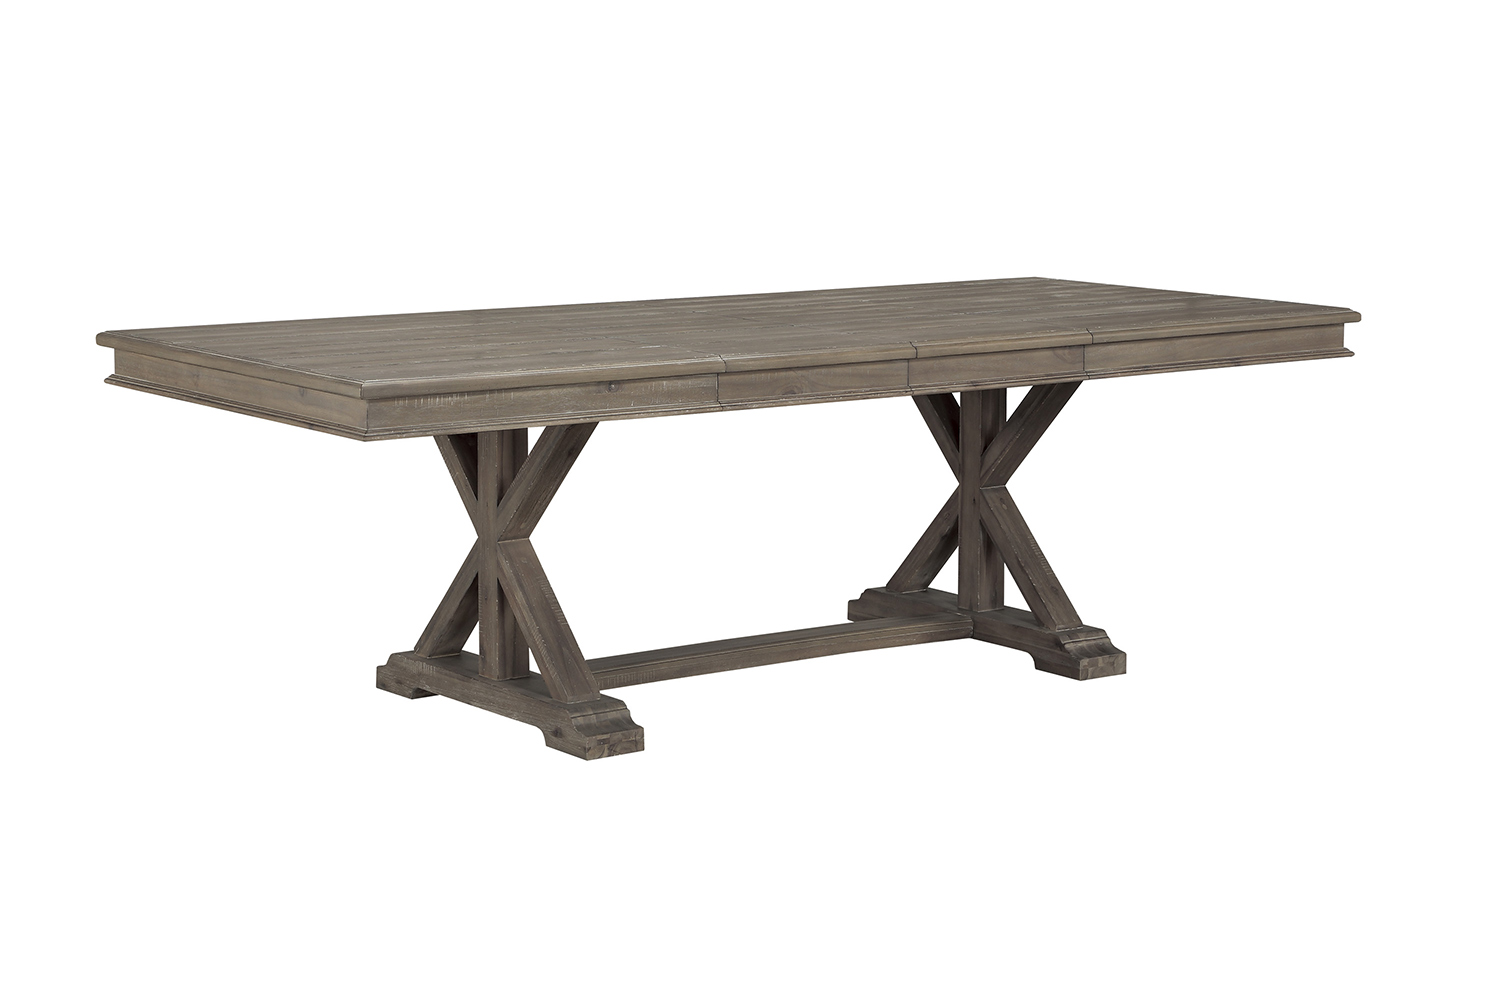 Homelegance Cardano Rectangular Dining Table - Driftwood Light Brown